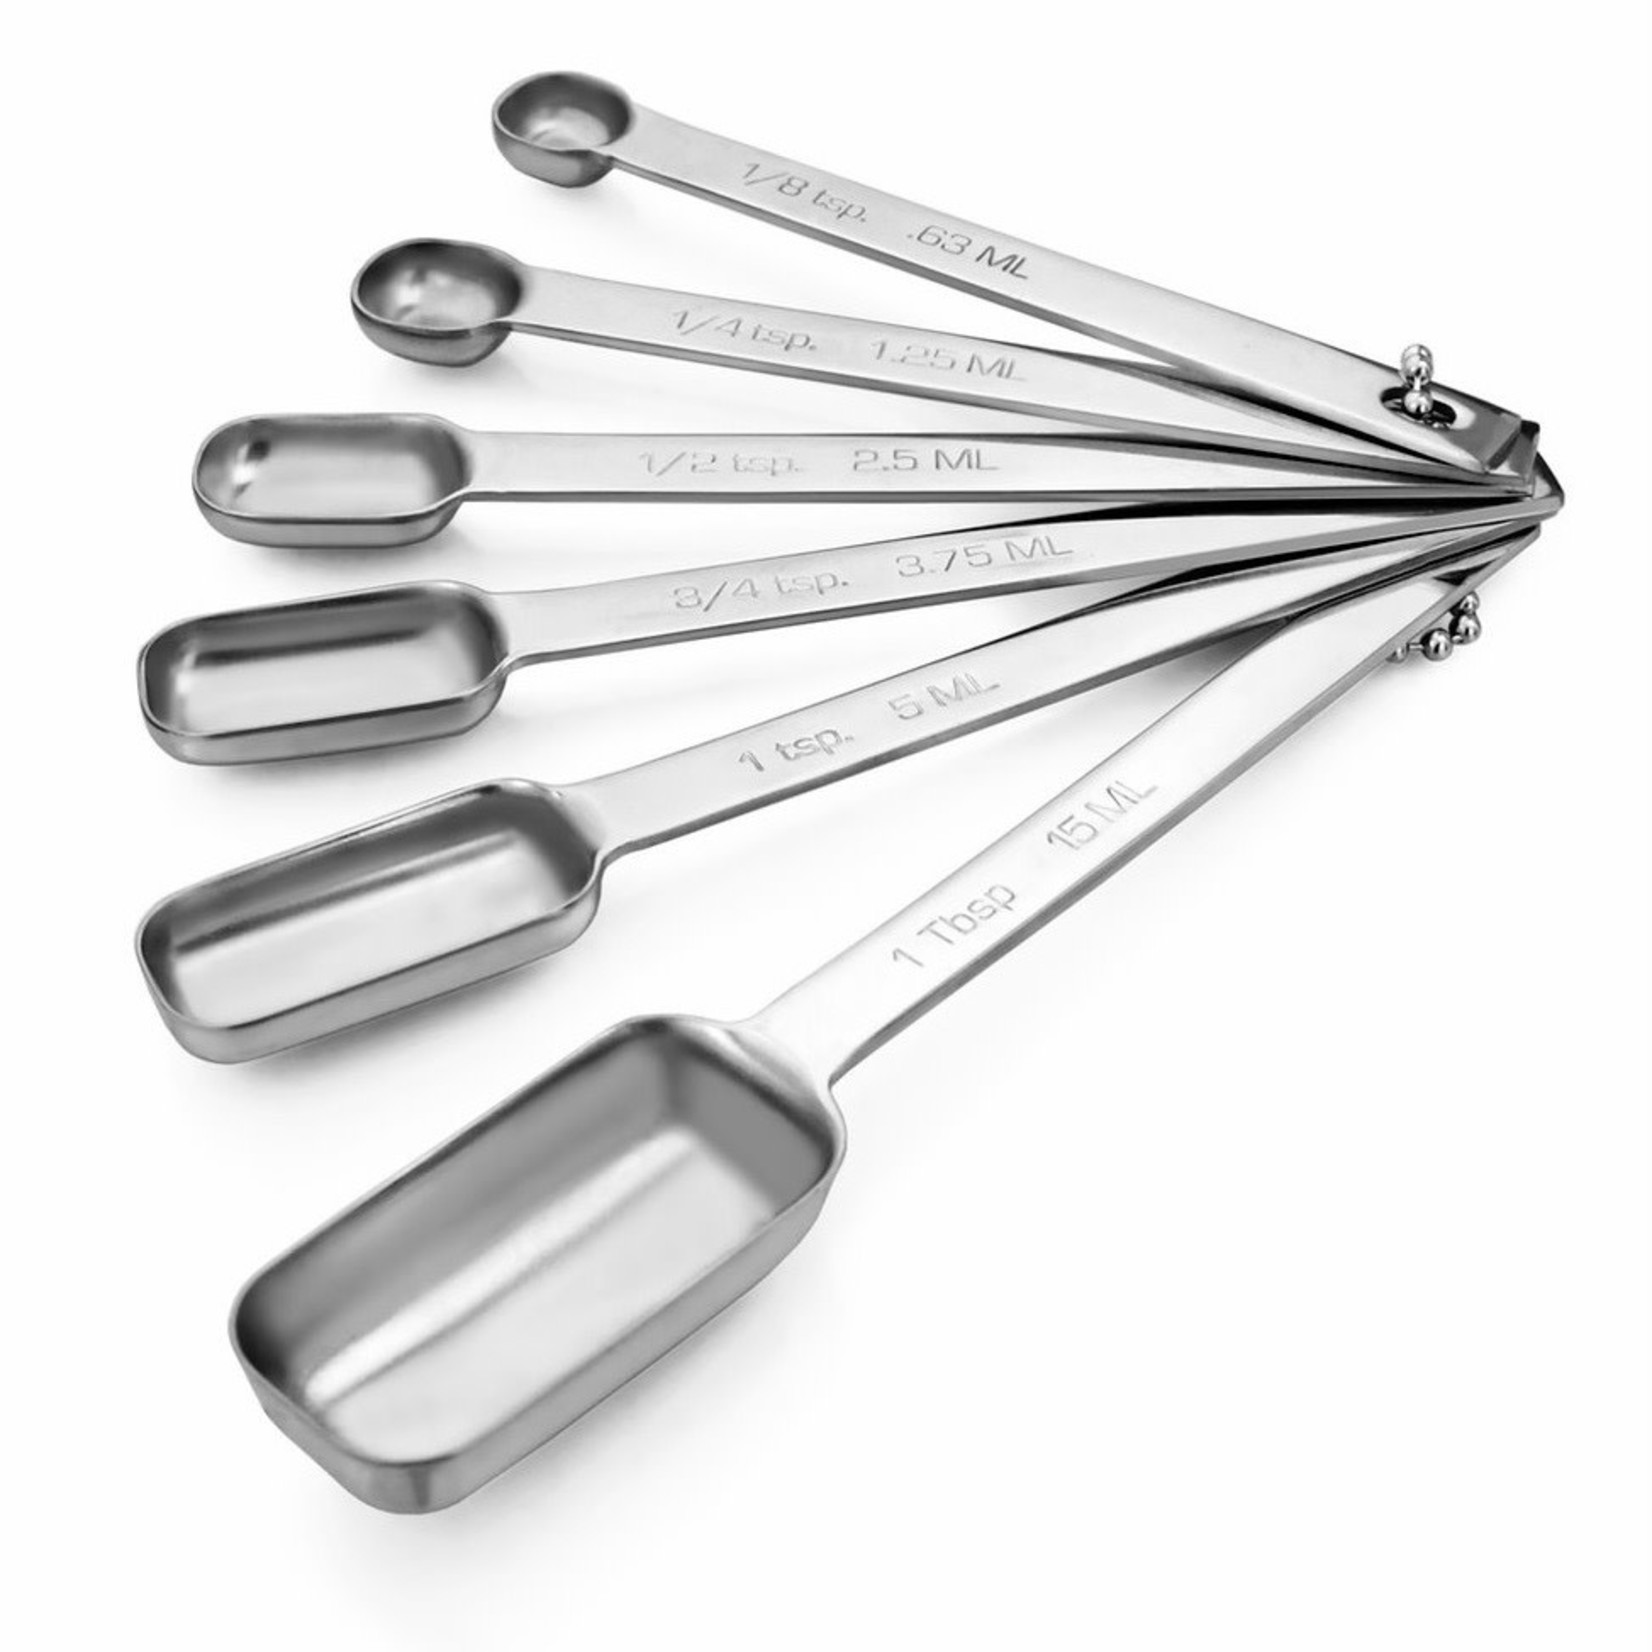 CUISINOX CUISINOX Measuring Spoon Set